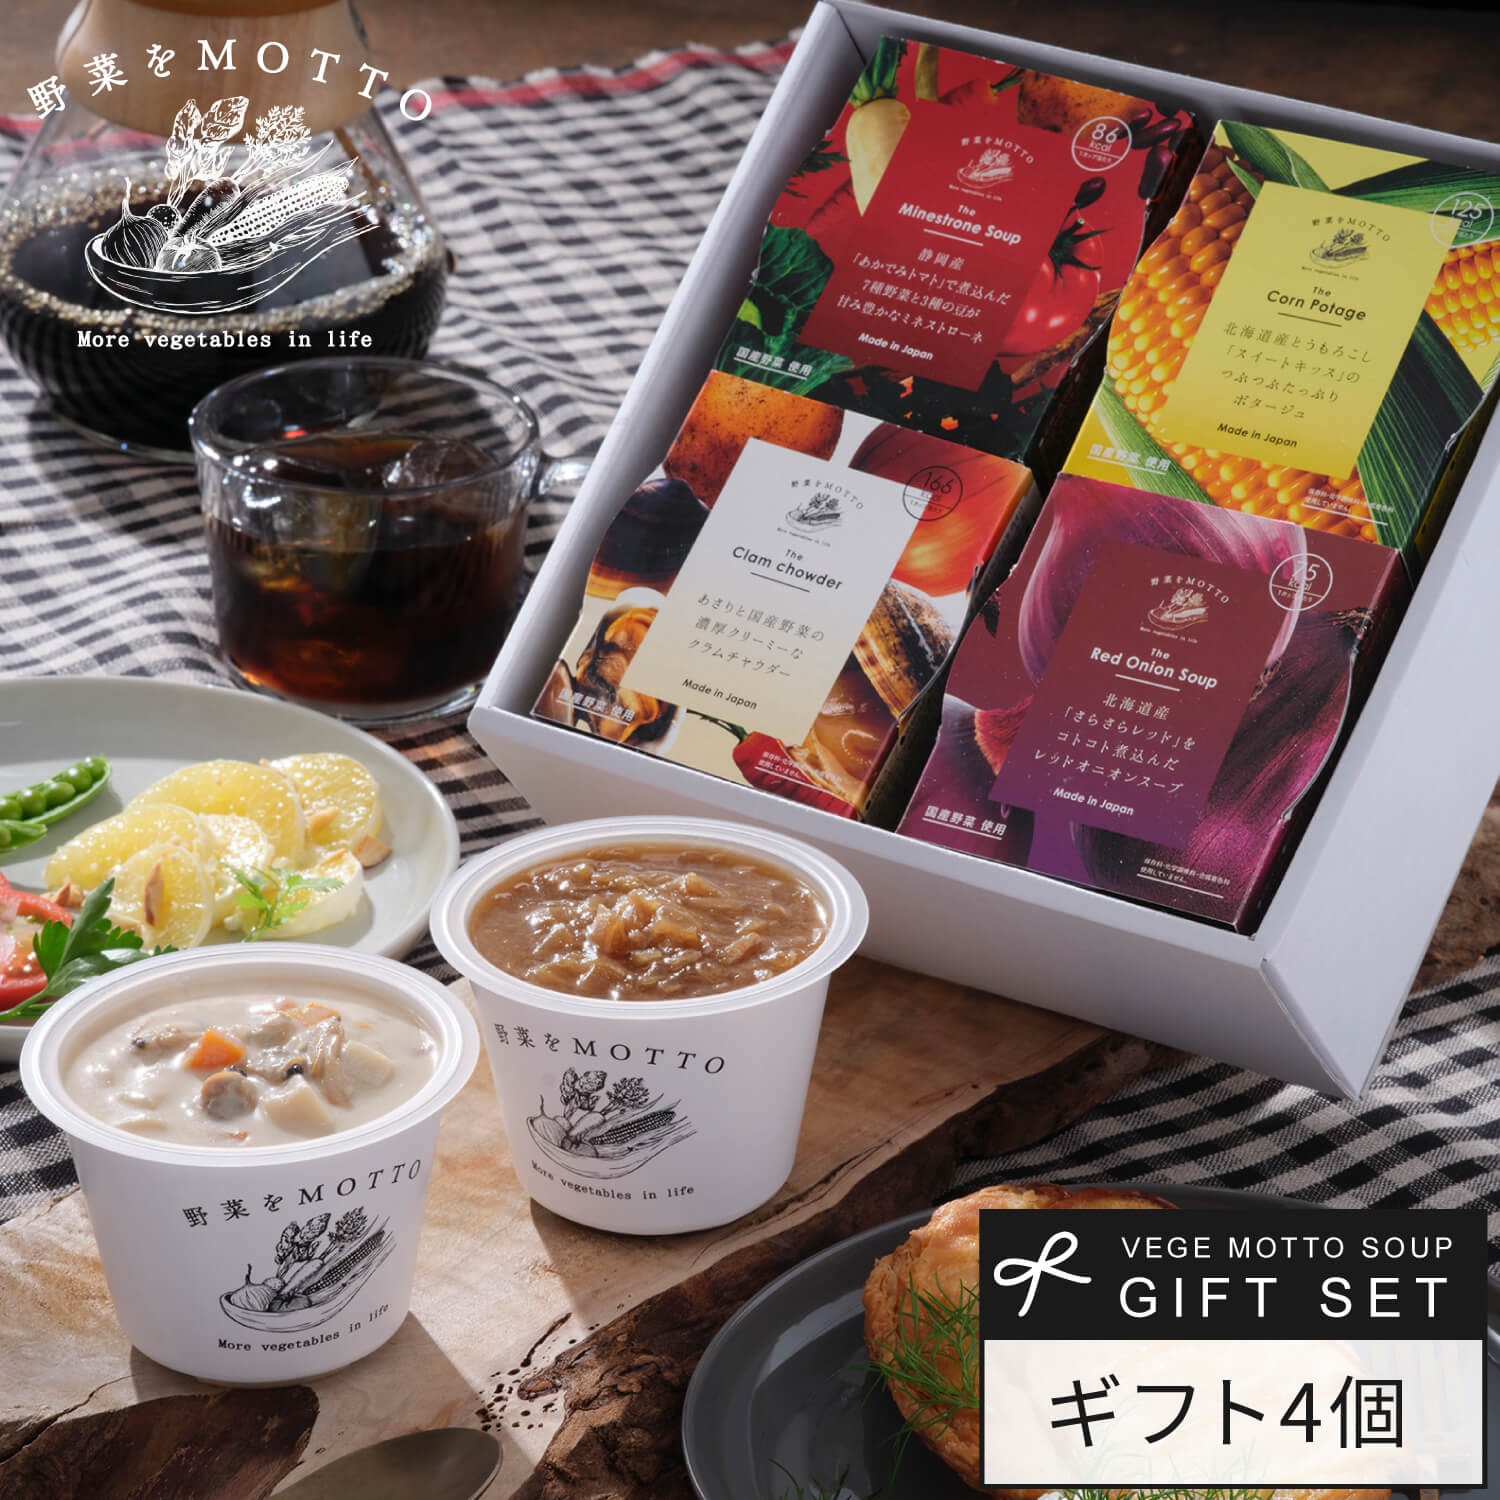 【ふるさと納税】ピエトロ 北海道産コーンスープ 6食セット 190g×6個 シェフの休日 レトルト 冷凍 スープ セット 冷凍スープ 送料無料